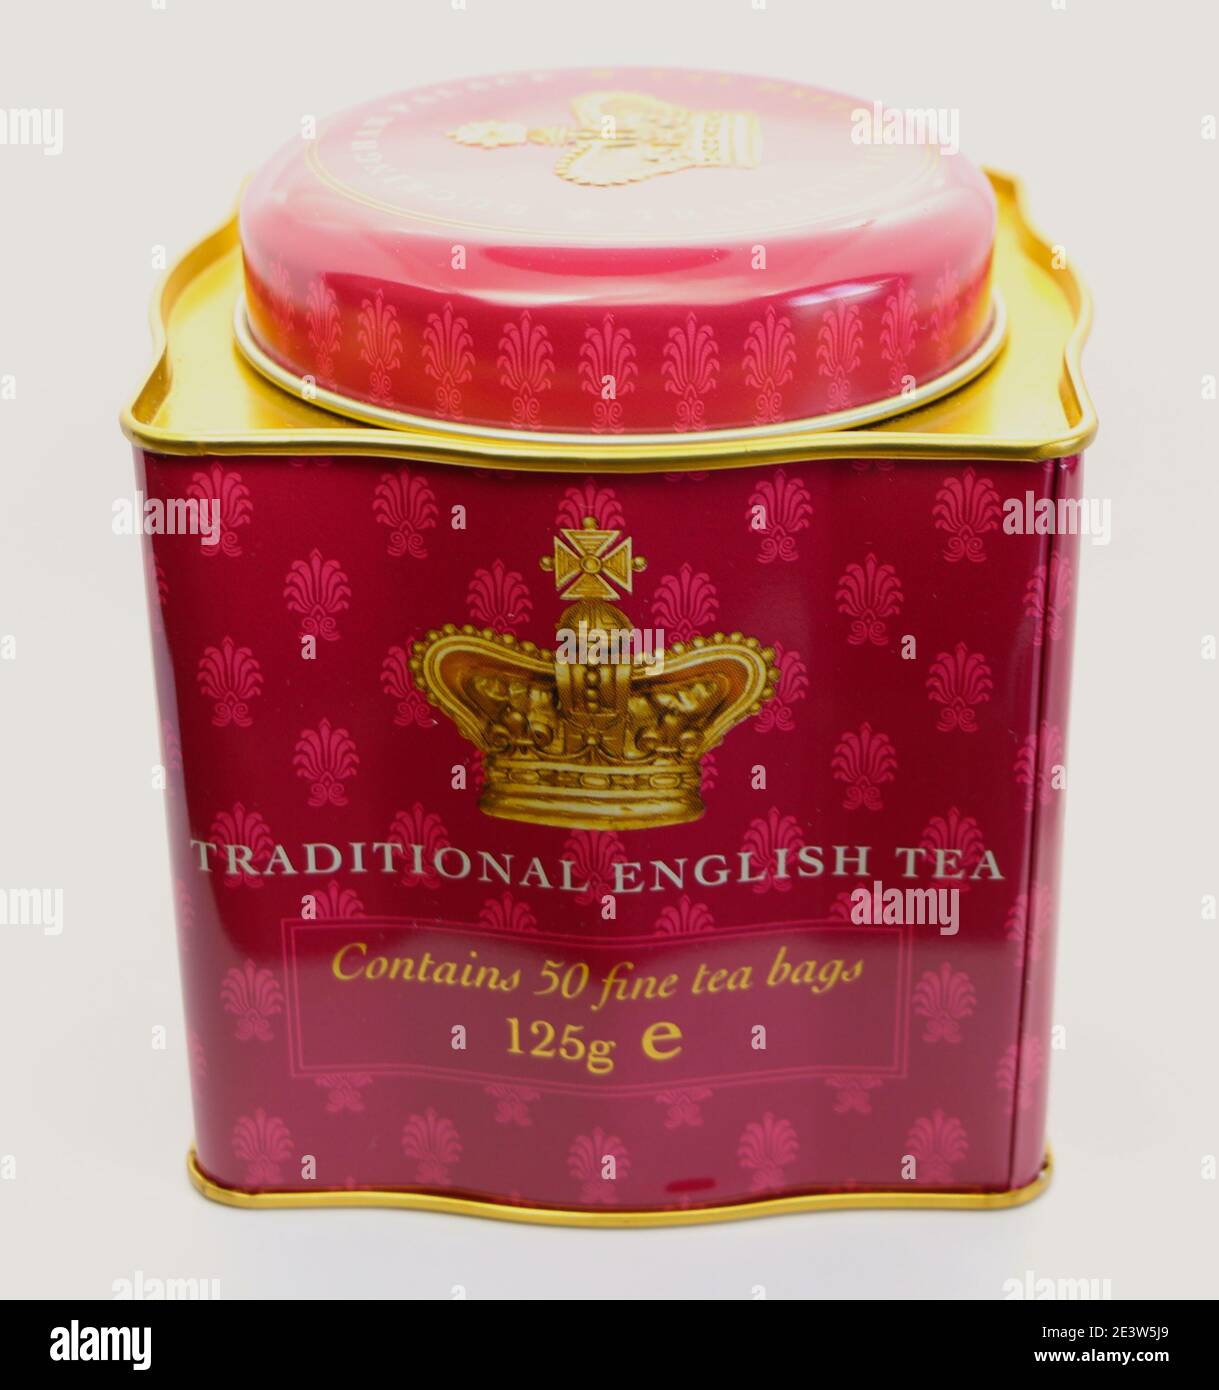 Foto eines traditionellen englischen Teebeutels in einer rot-goldenen Blechbox als Souvenir Buckingham Palace London England UK Seitenansicht Stockfoto